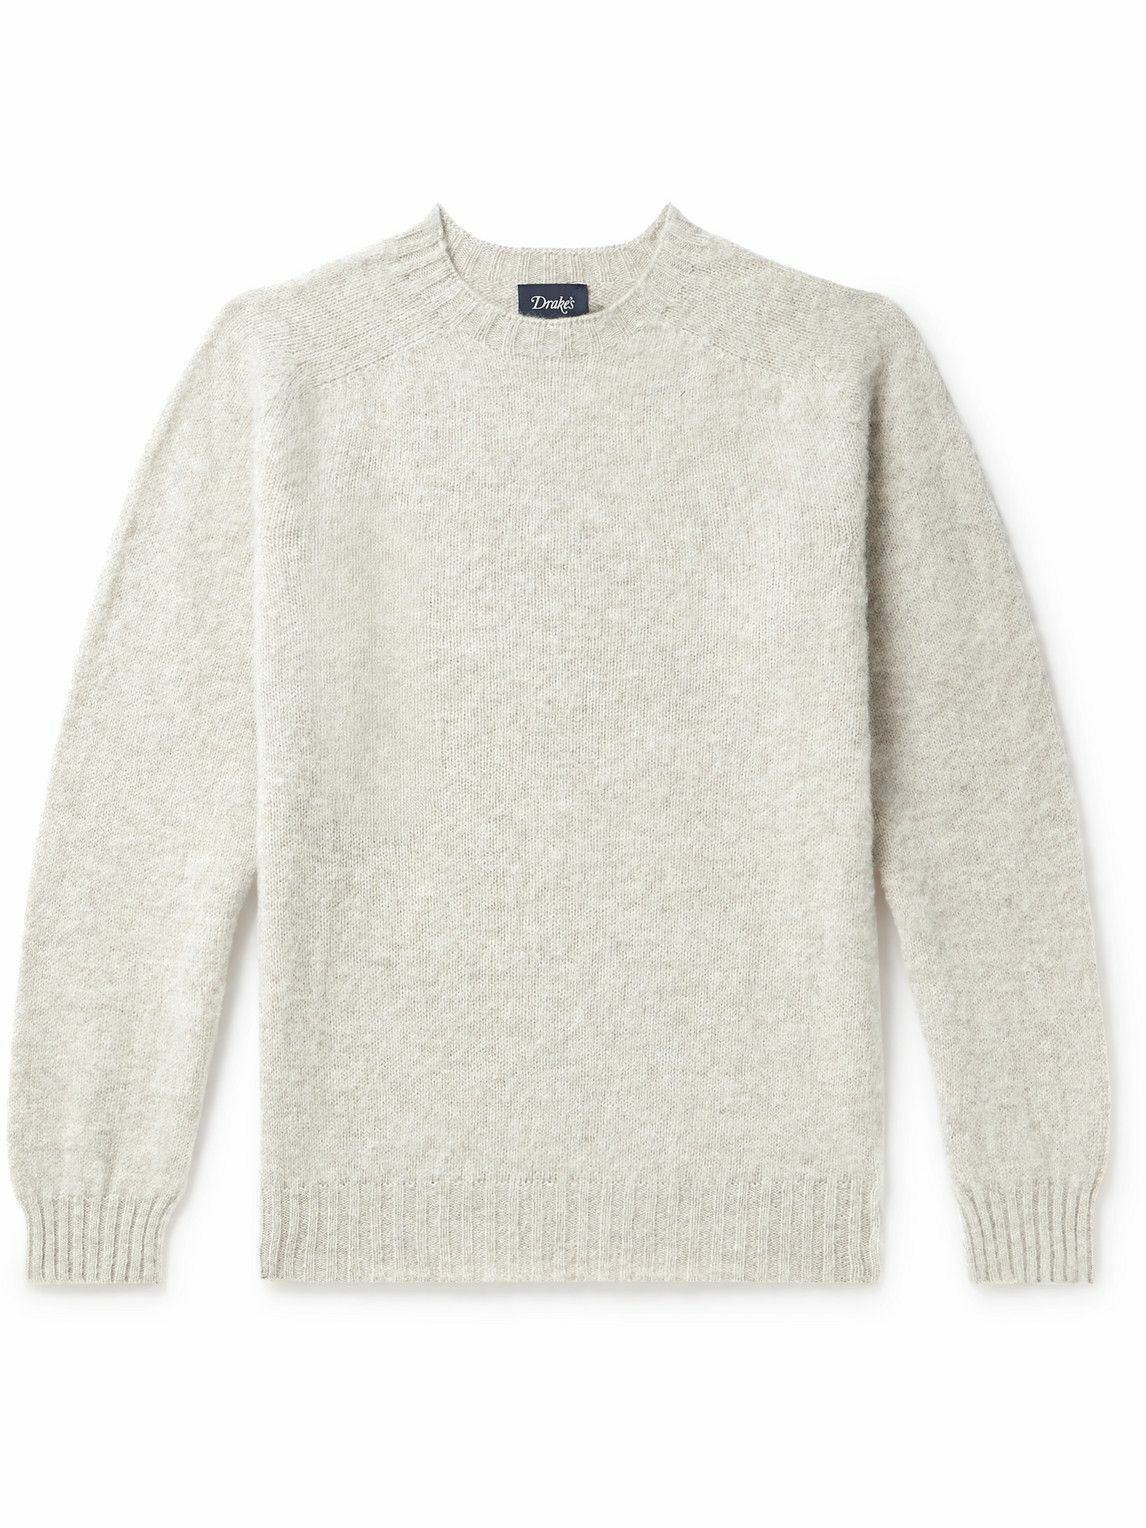 Photo: Drake's - Brushed Virgin Shetland Wool Sweater - Gray